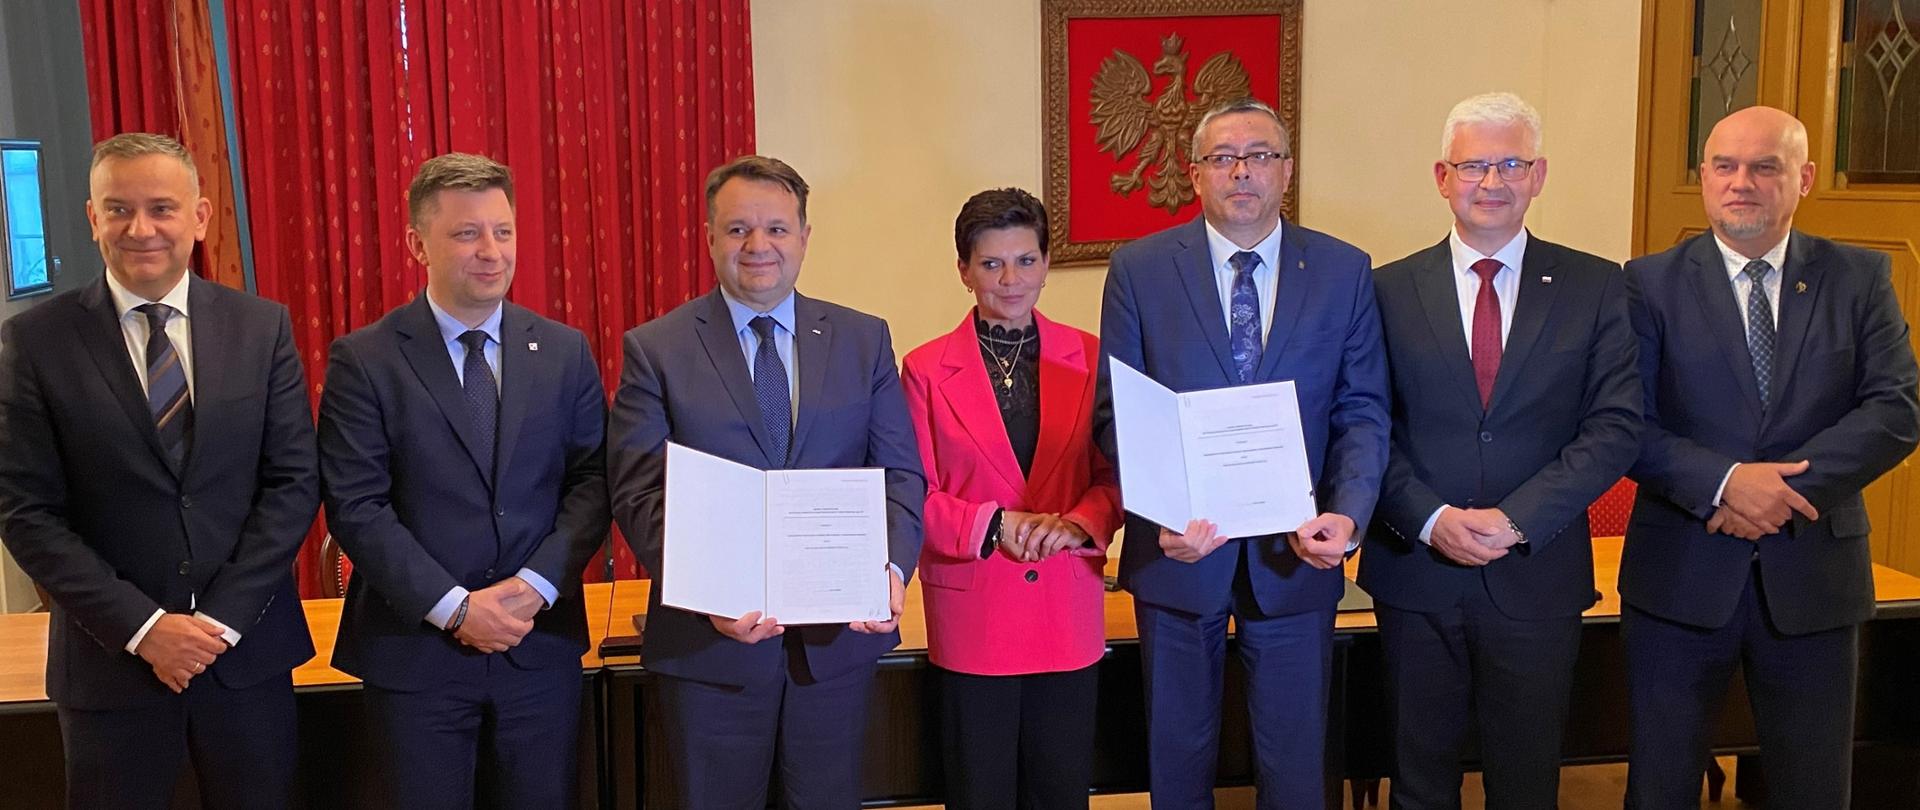 Artur Michalski, zastępca prezesa zarządu NFOŚiGW z Beneficjentem okazują podpisane umowy. Zdjęcie grupowe